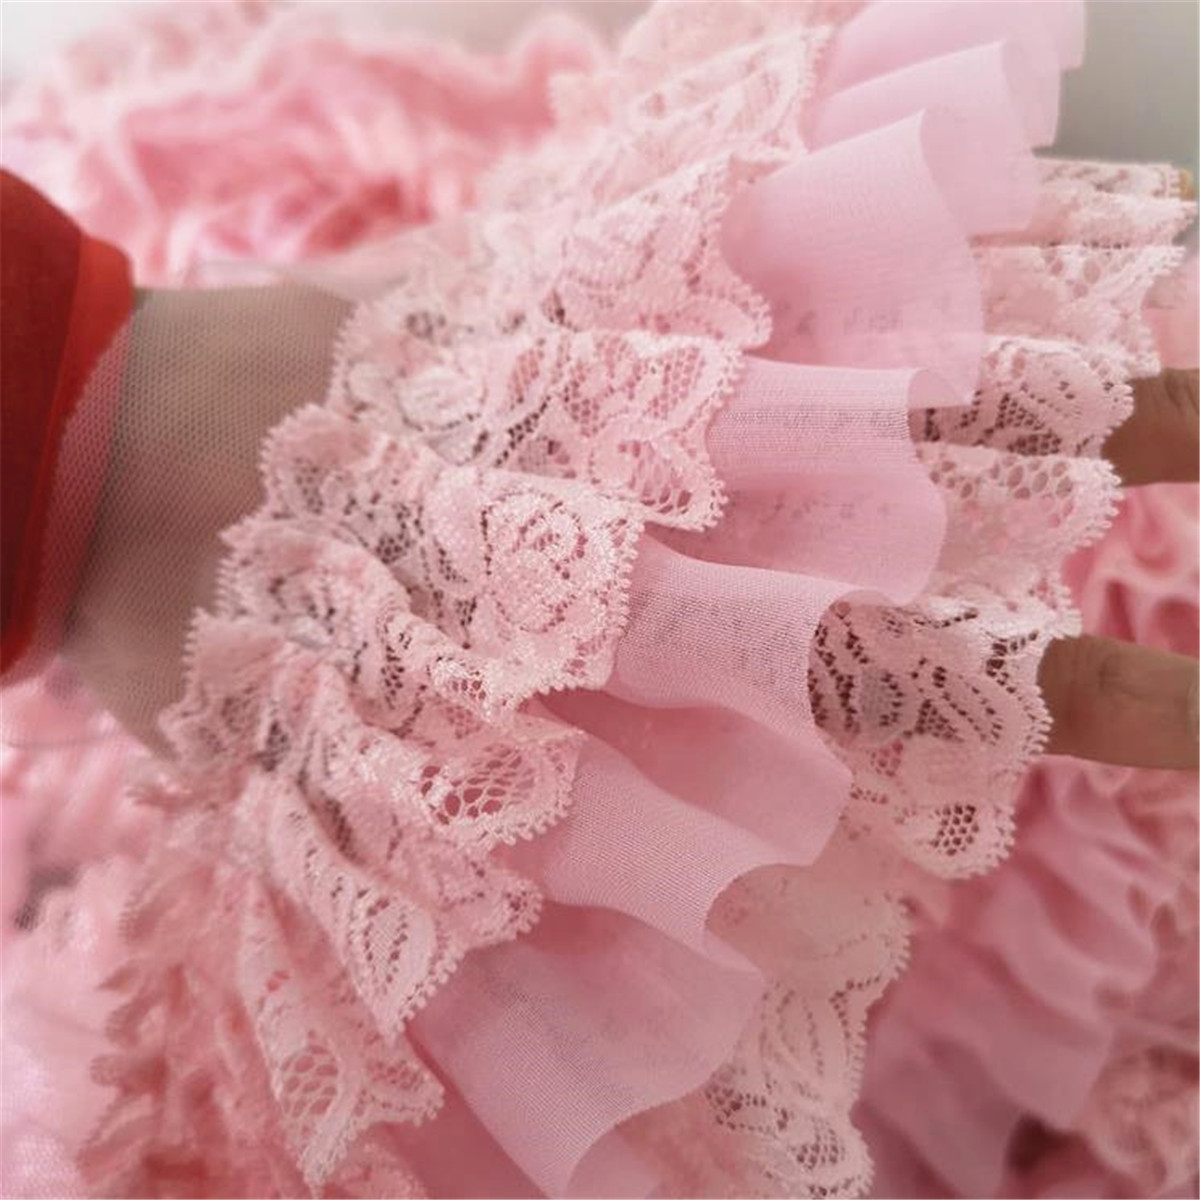 50cm Pink Chiffon Ruffle Lace Trim 3 Layer Pleated Ribbon Sewing 394 Width 885085902773 Ebay 4419